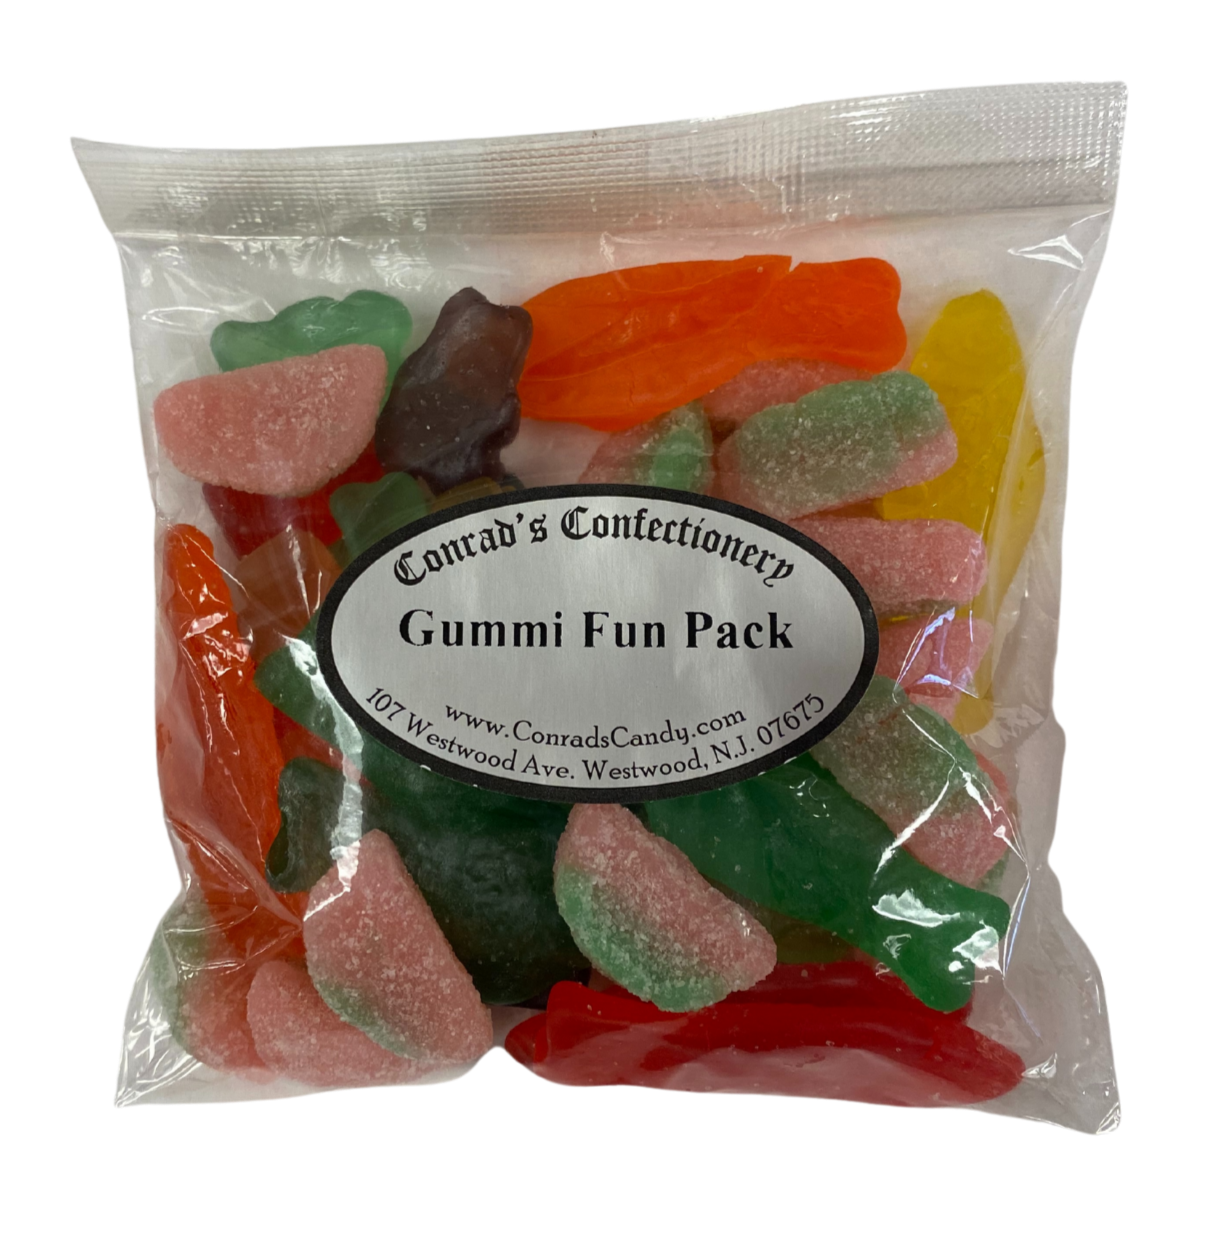 Gummi Fun Pack- 6 oz bag